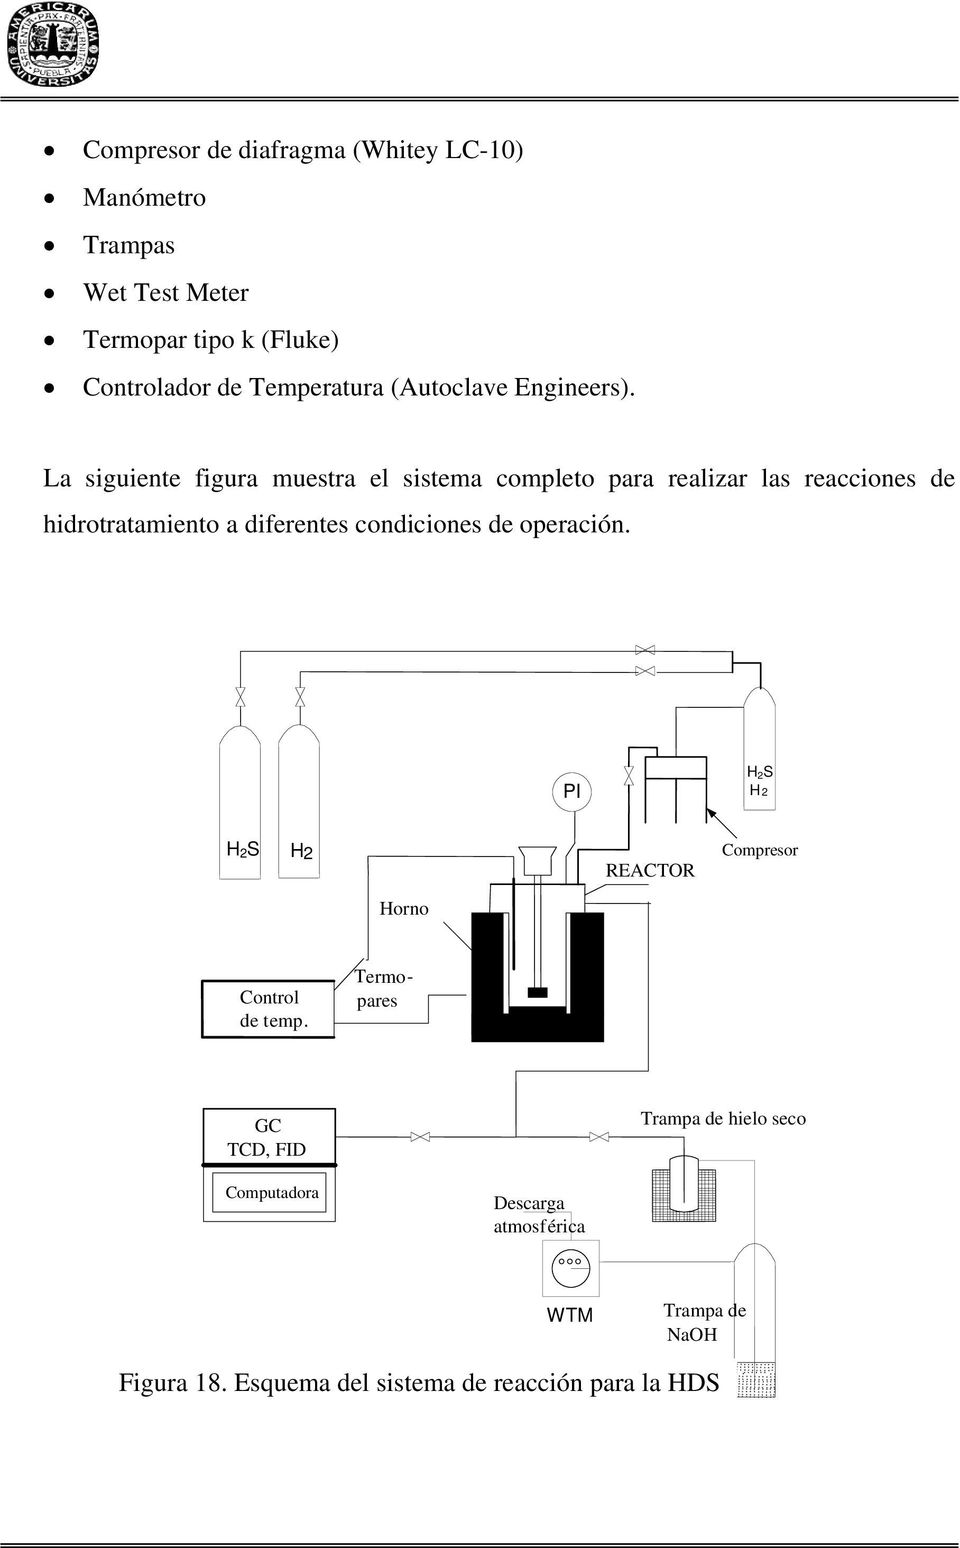 La siguiente figura muestra el sistema completo para realizar las reacciones de hidrotratamiento a diferentes condiciones de operación.